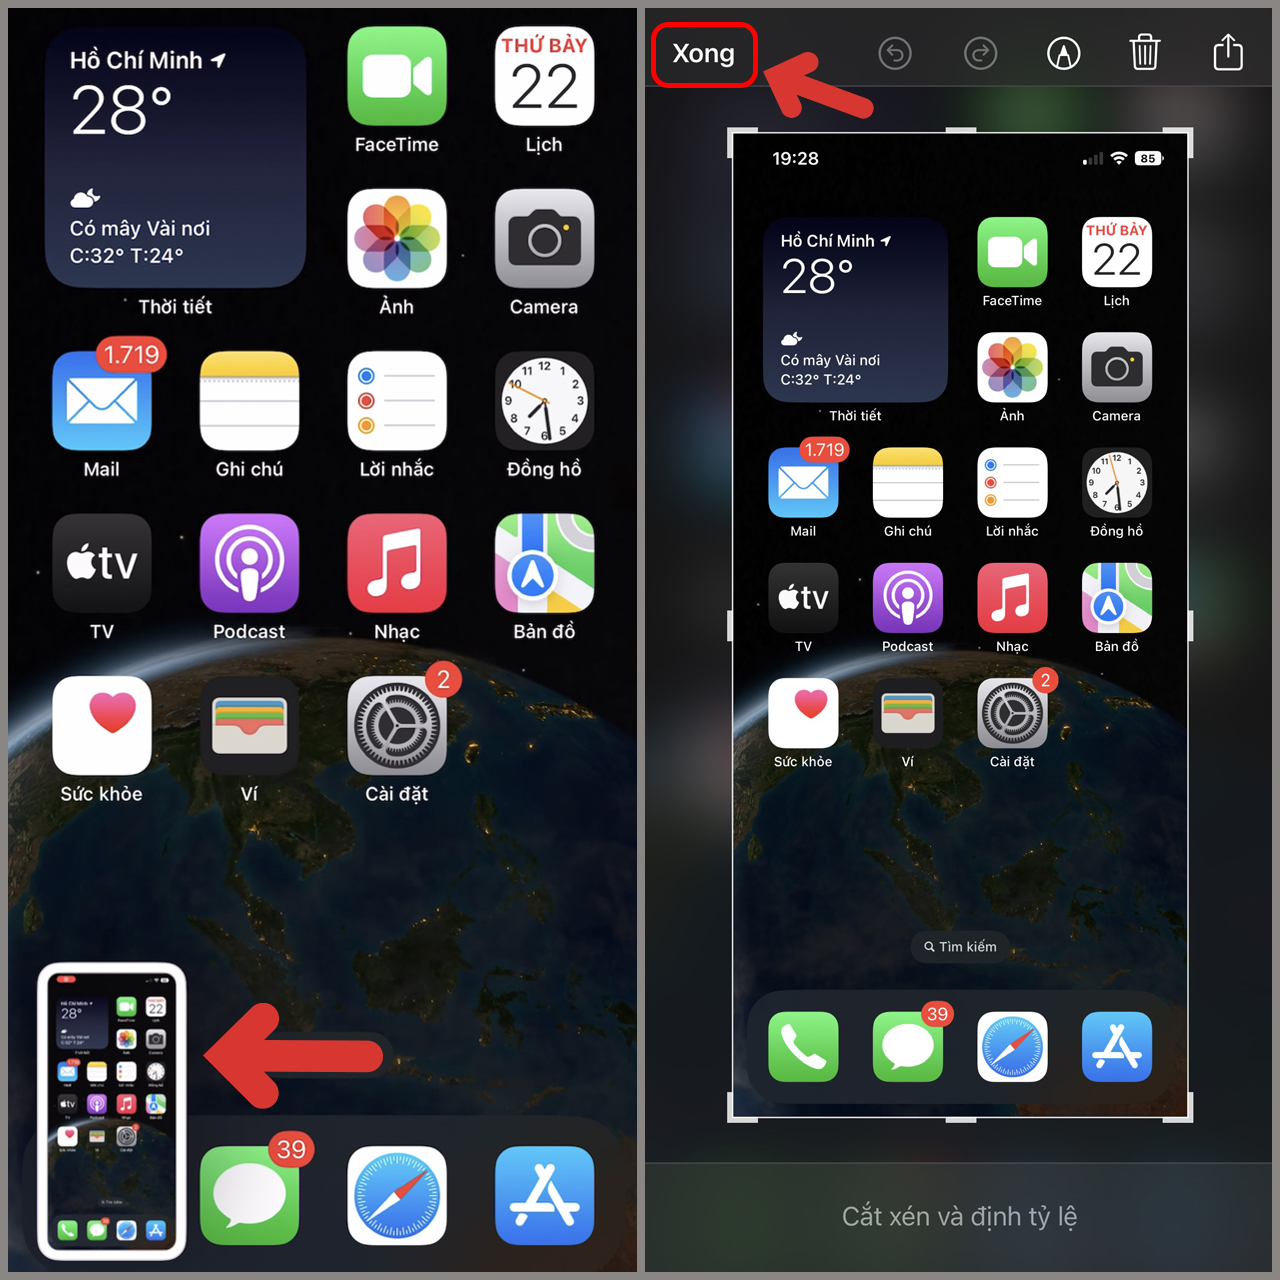 Chụp màn hình iPhone 14 Pro: Chụp màn hình trở nên dễ dàng hơn bao giờ hết với tính năng mới trên iPhone 14 Pro. Bạn có thể tùy chỉnh để chụp bằng cách vuốt từ cạnh sang, hoặc sử dụng Siri, đơn giản và tiết kiệm thời gian.